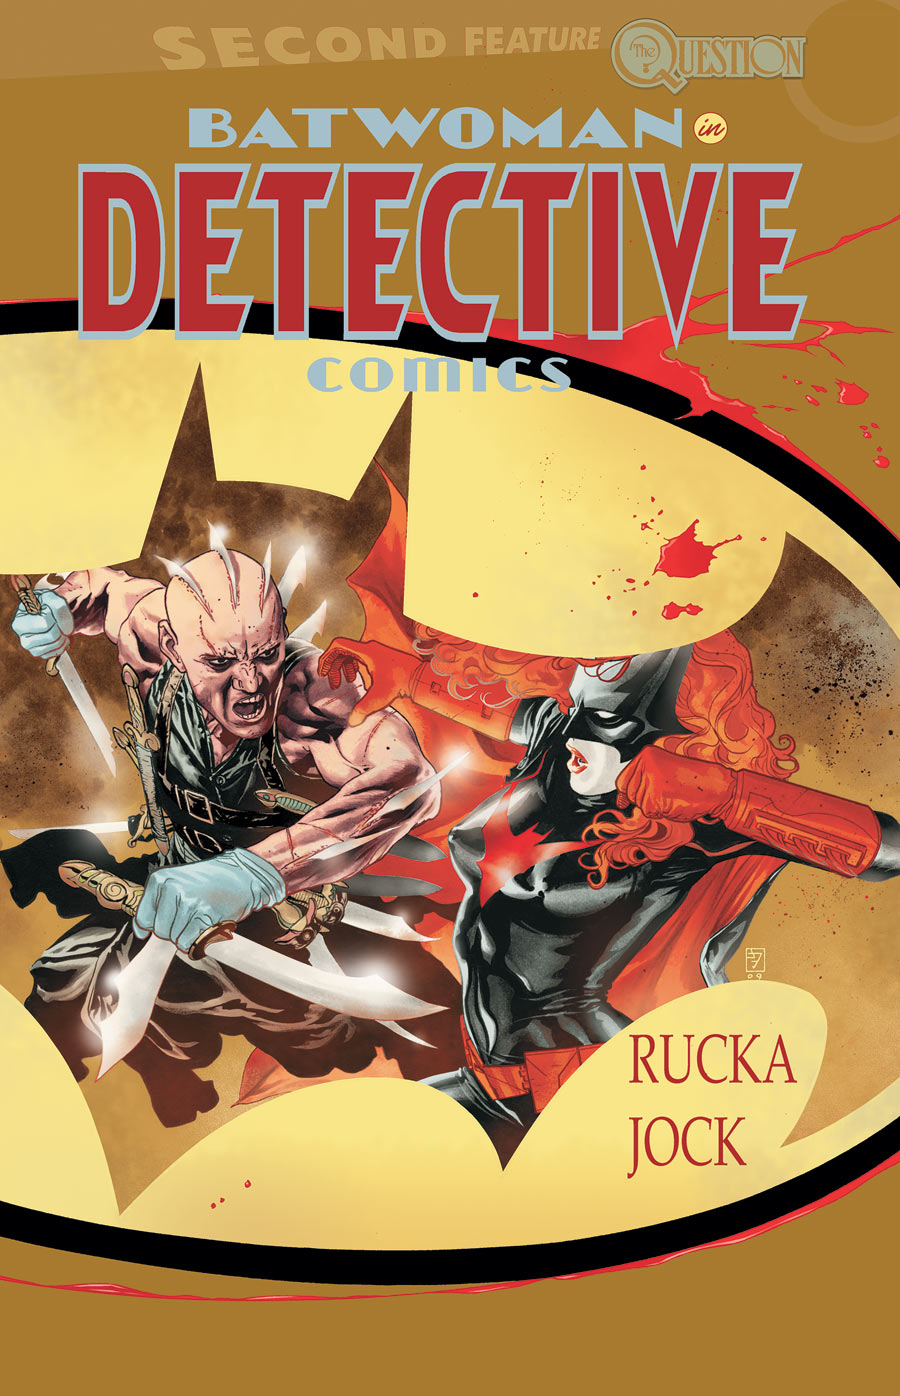 Detective Comics #863